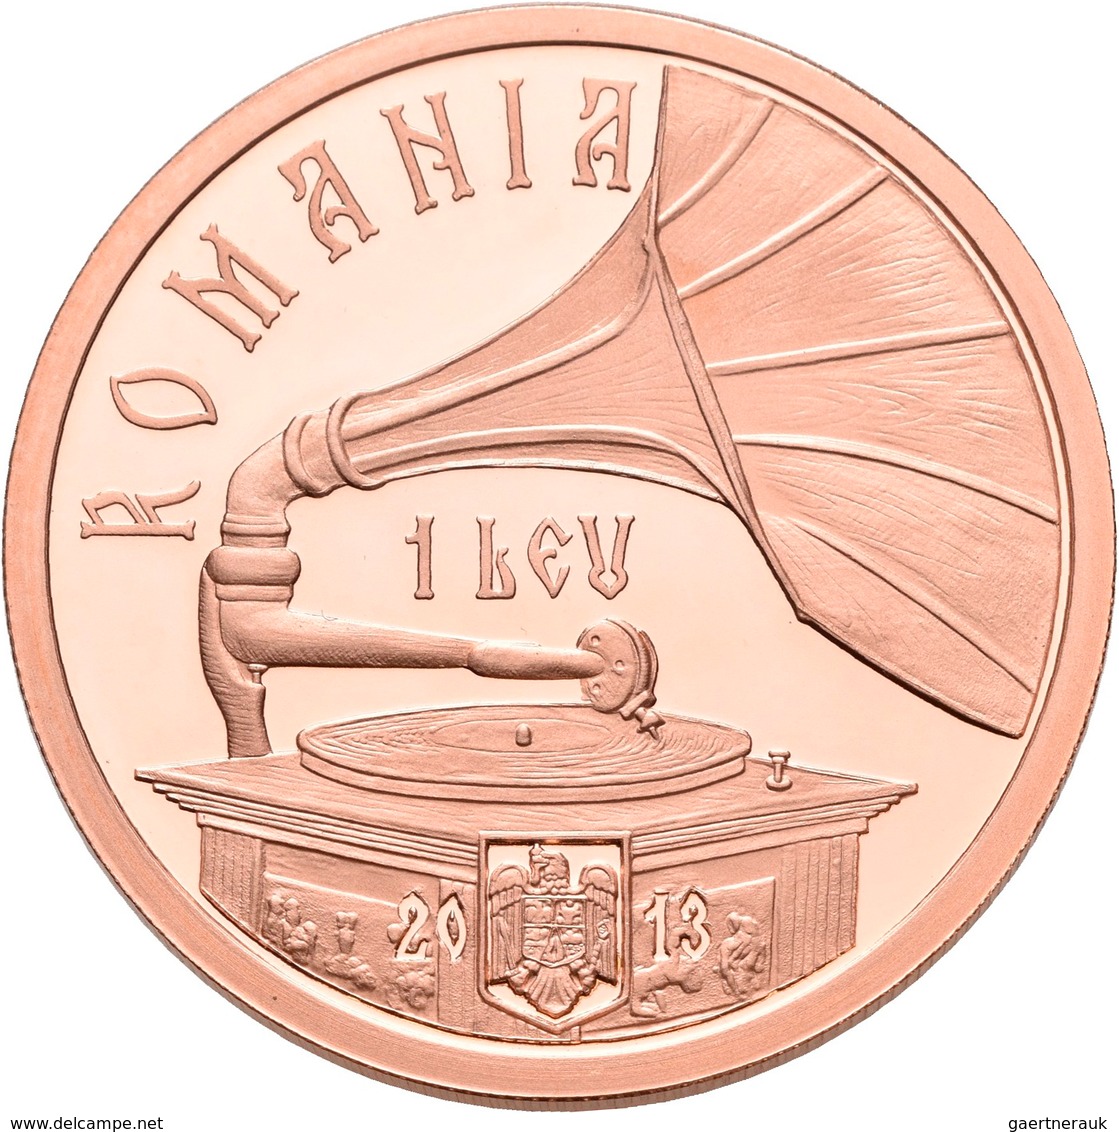 Rumänien: 1 Leu 2013, 100. Geburtstag Maria Tanase. KM# N.b. Verkupferte Tombac. Auflage Nur 250 Stü - Roumanie